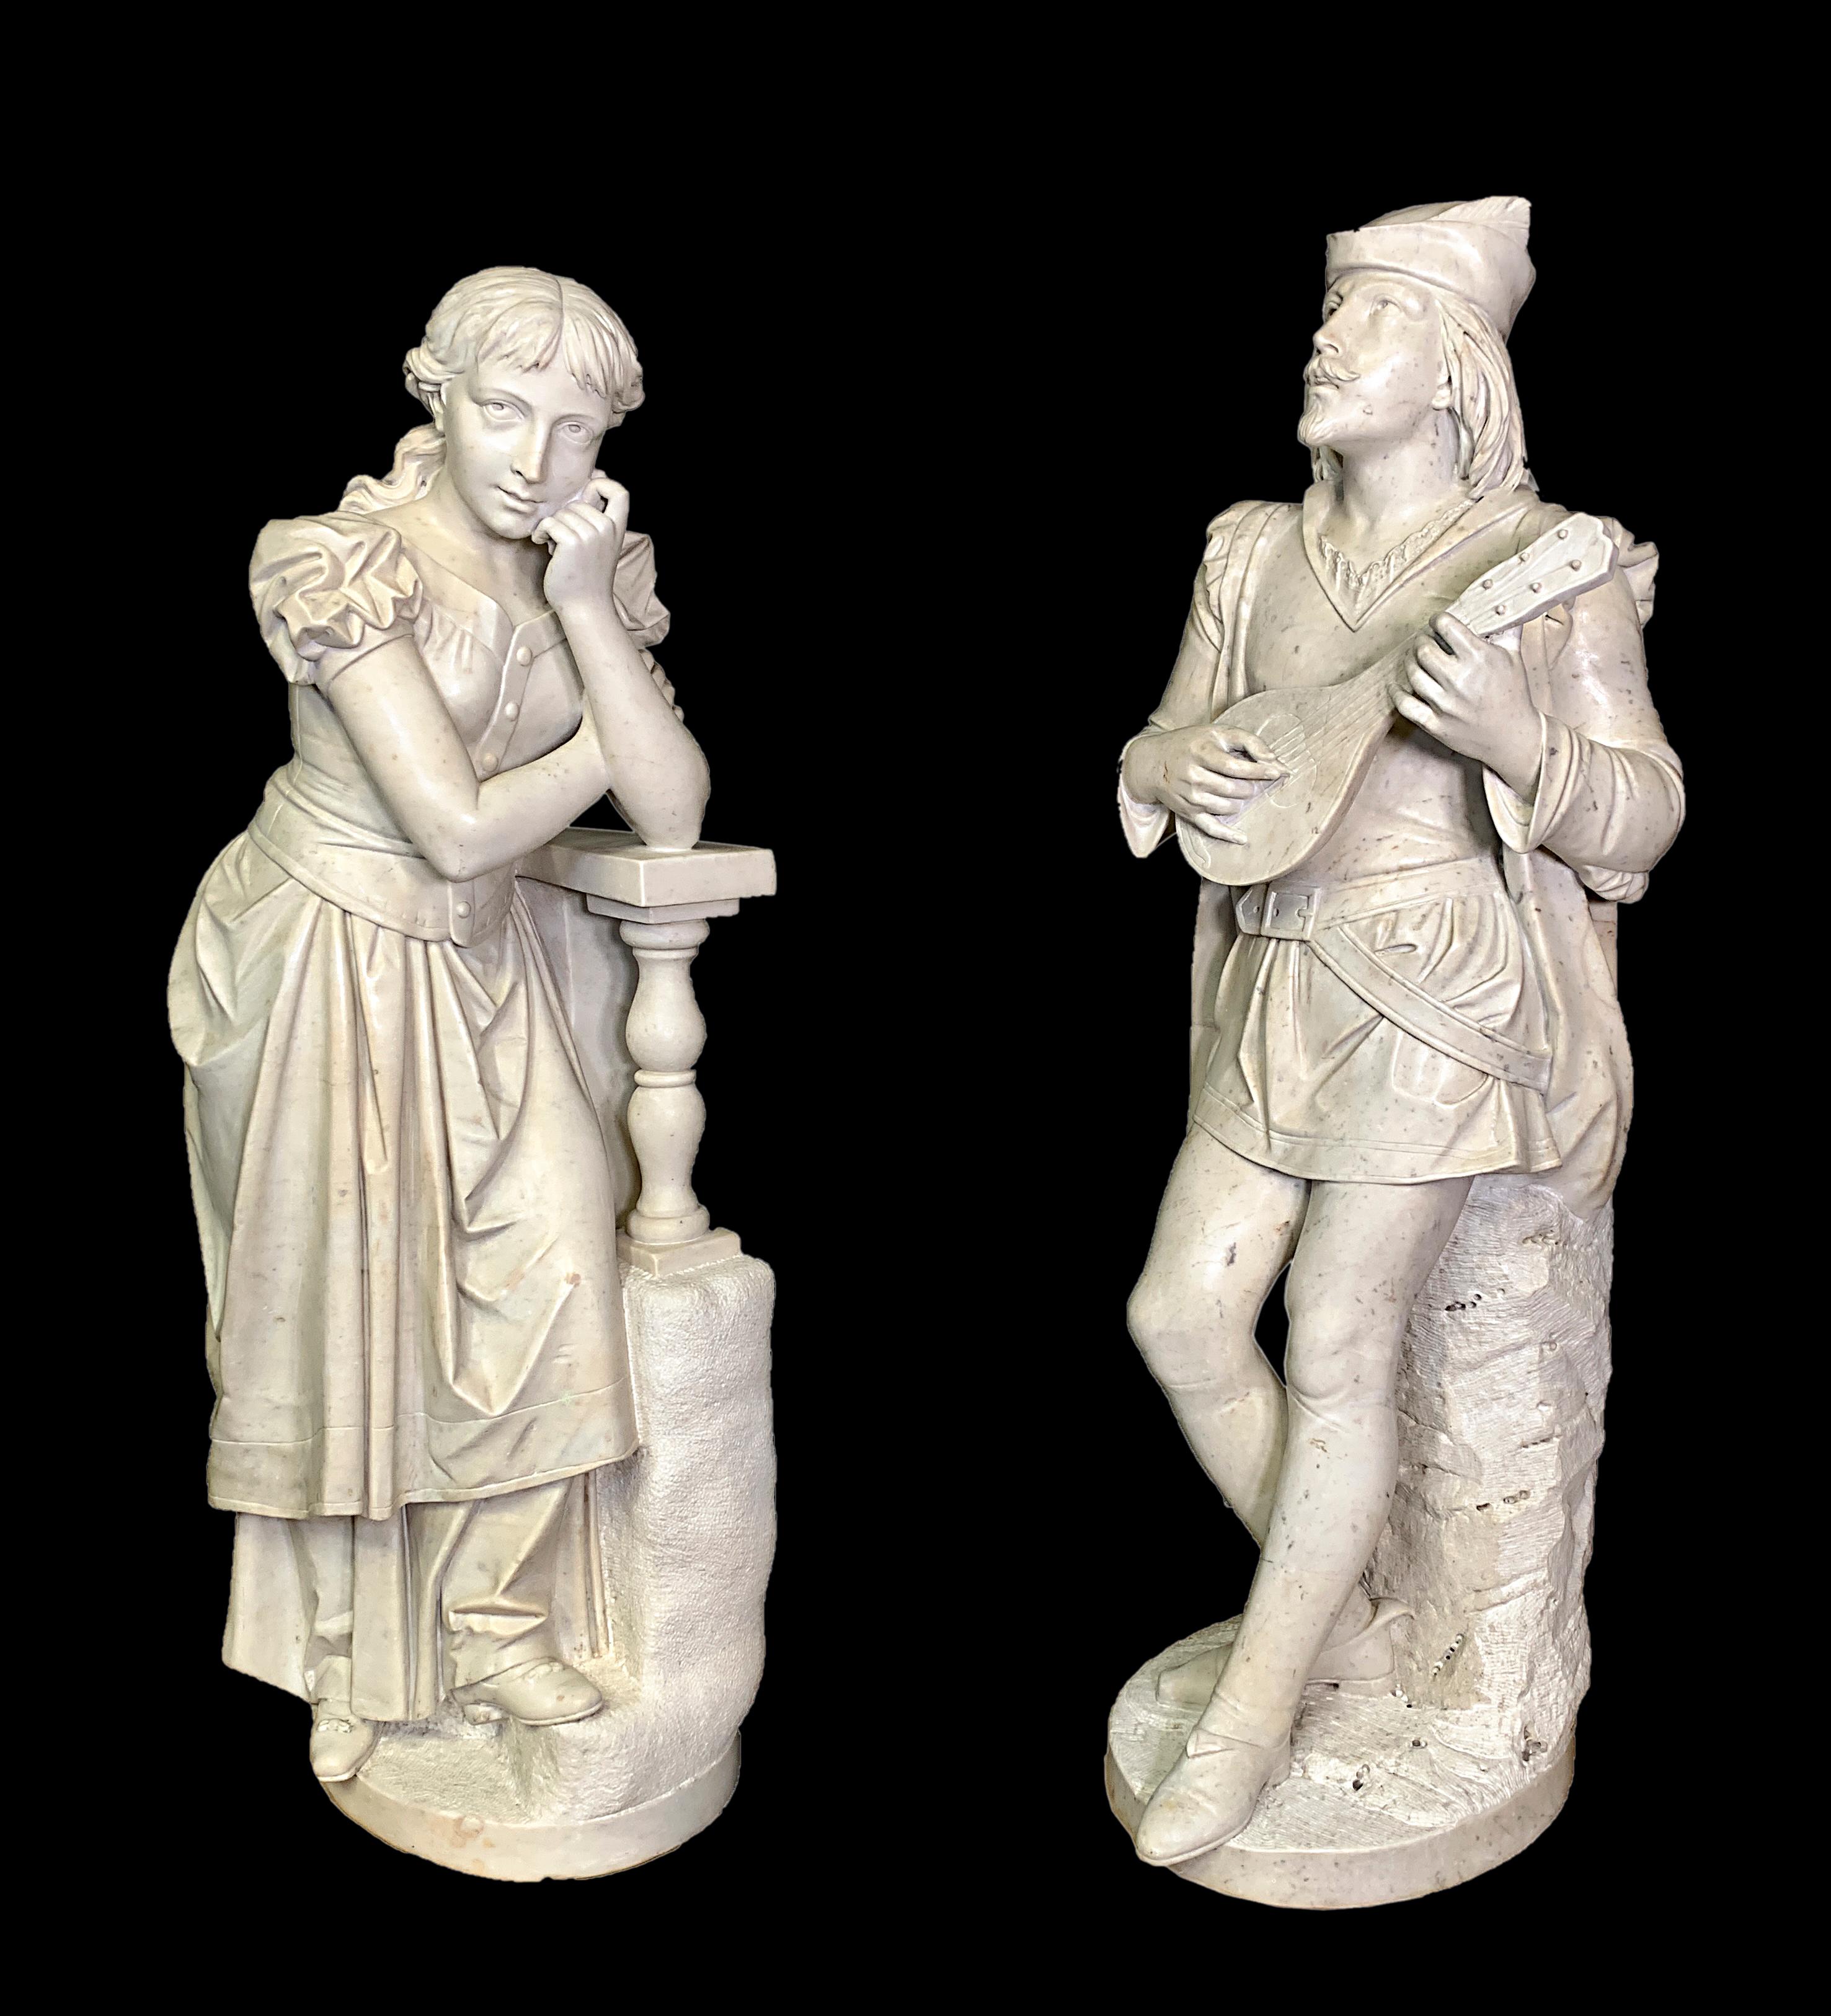 Dieses prächtige Paar antiker italienischer, handgeschnitzter Marmorfiguren in Lebensgröße stellt Romeo und Julia dar, das junge Liebespaar aus dem berühmten Stück von William Shakespeare. 

Eine Figur zeigt einen verliebten Mann, der nach oben